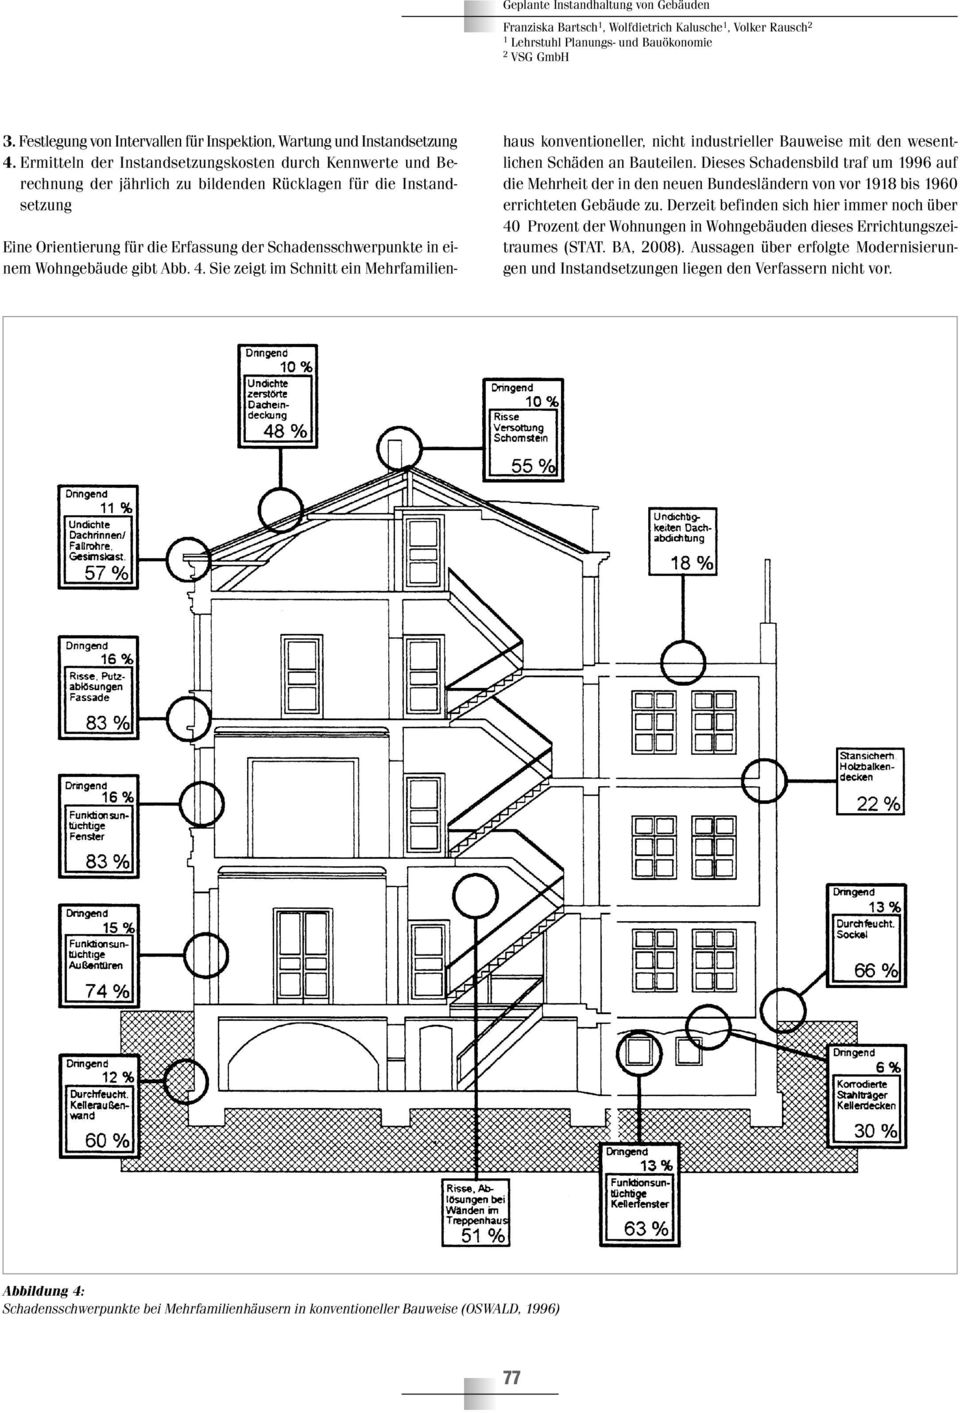 Wohngebäude gibt Abb. 4. Sie zeigt im Schnitt ein Mehrfamilienhaus konventioneller, nicht industrieller Bauweise mit den wesentlichen Schäden an Bauteilen.